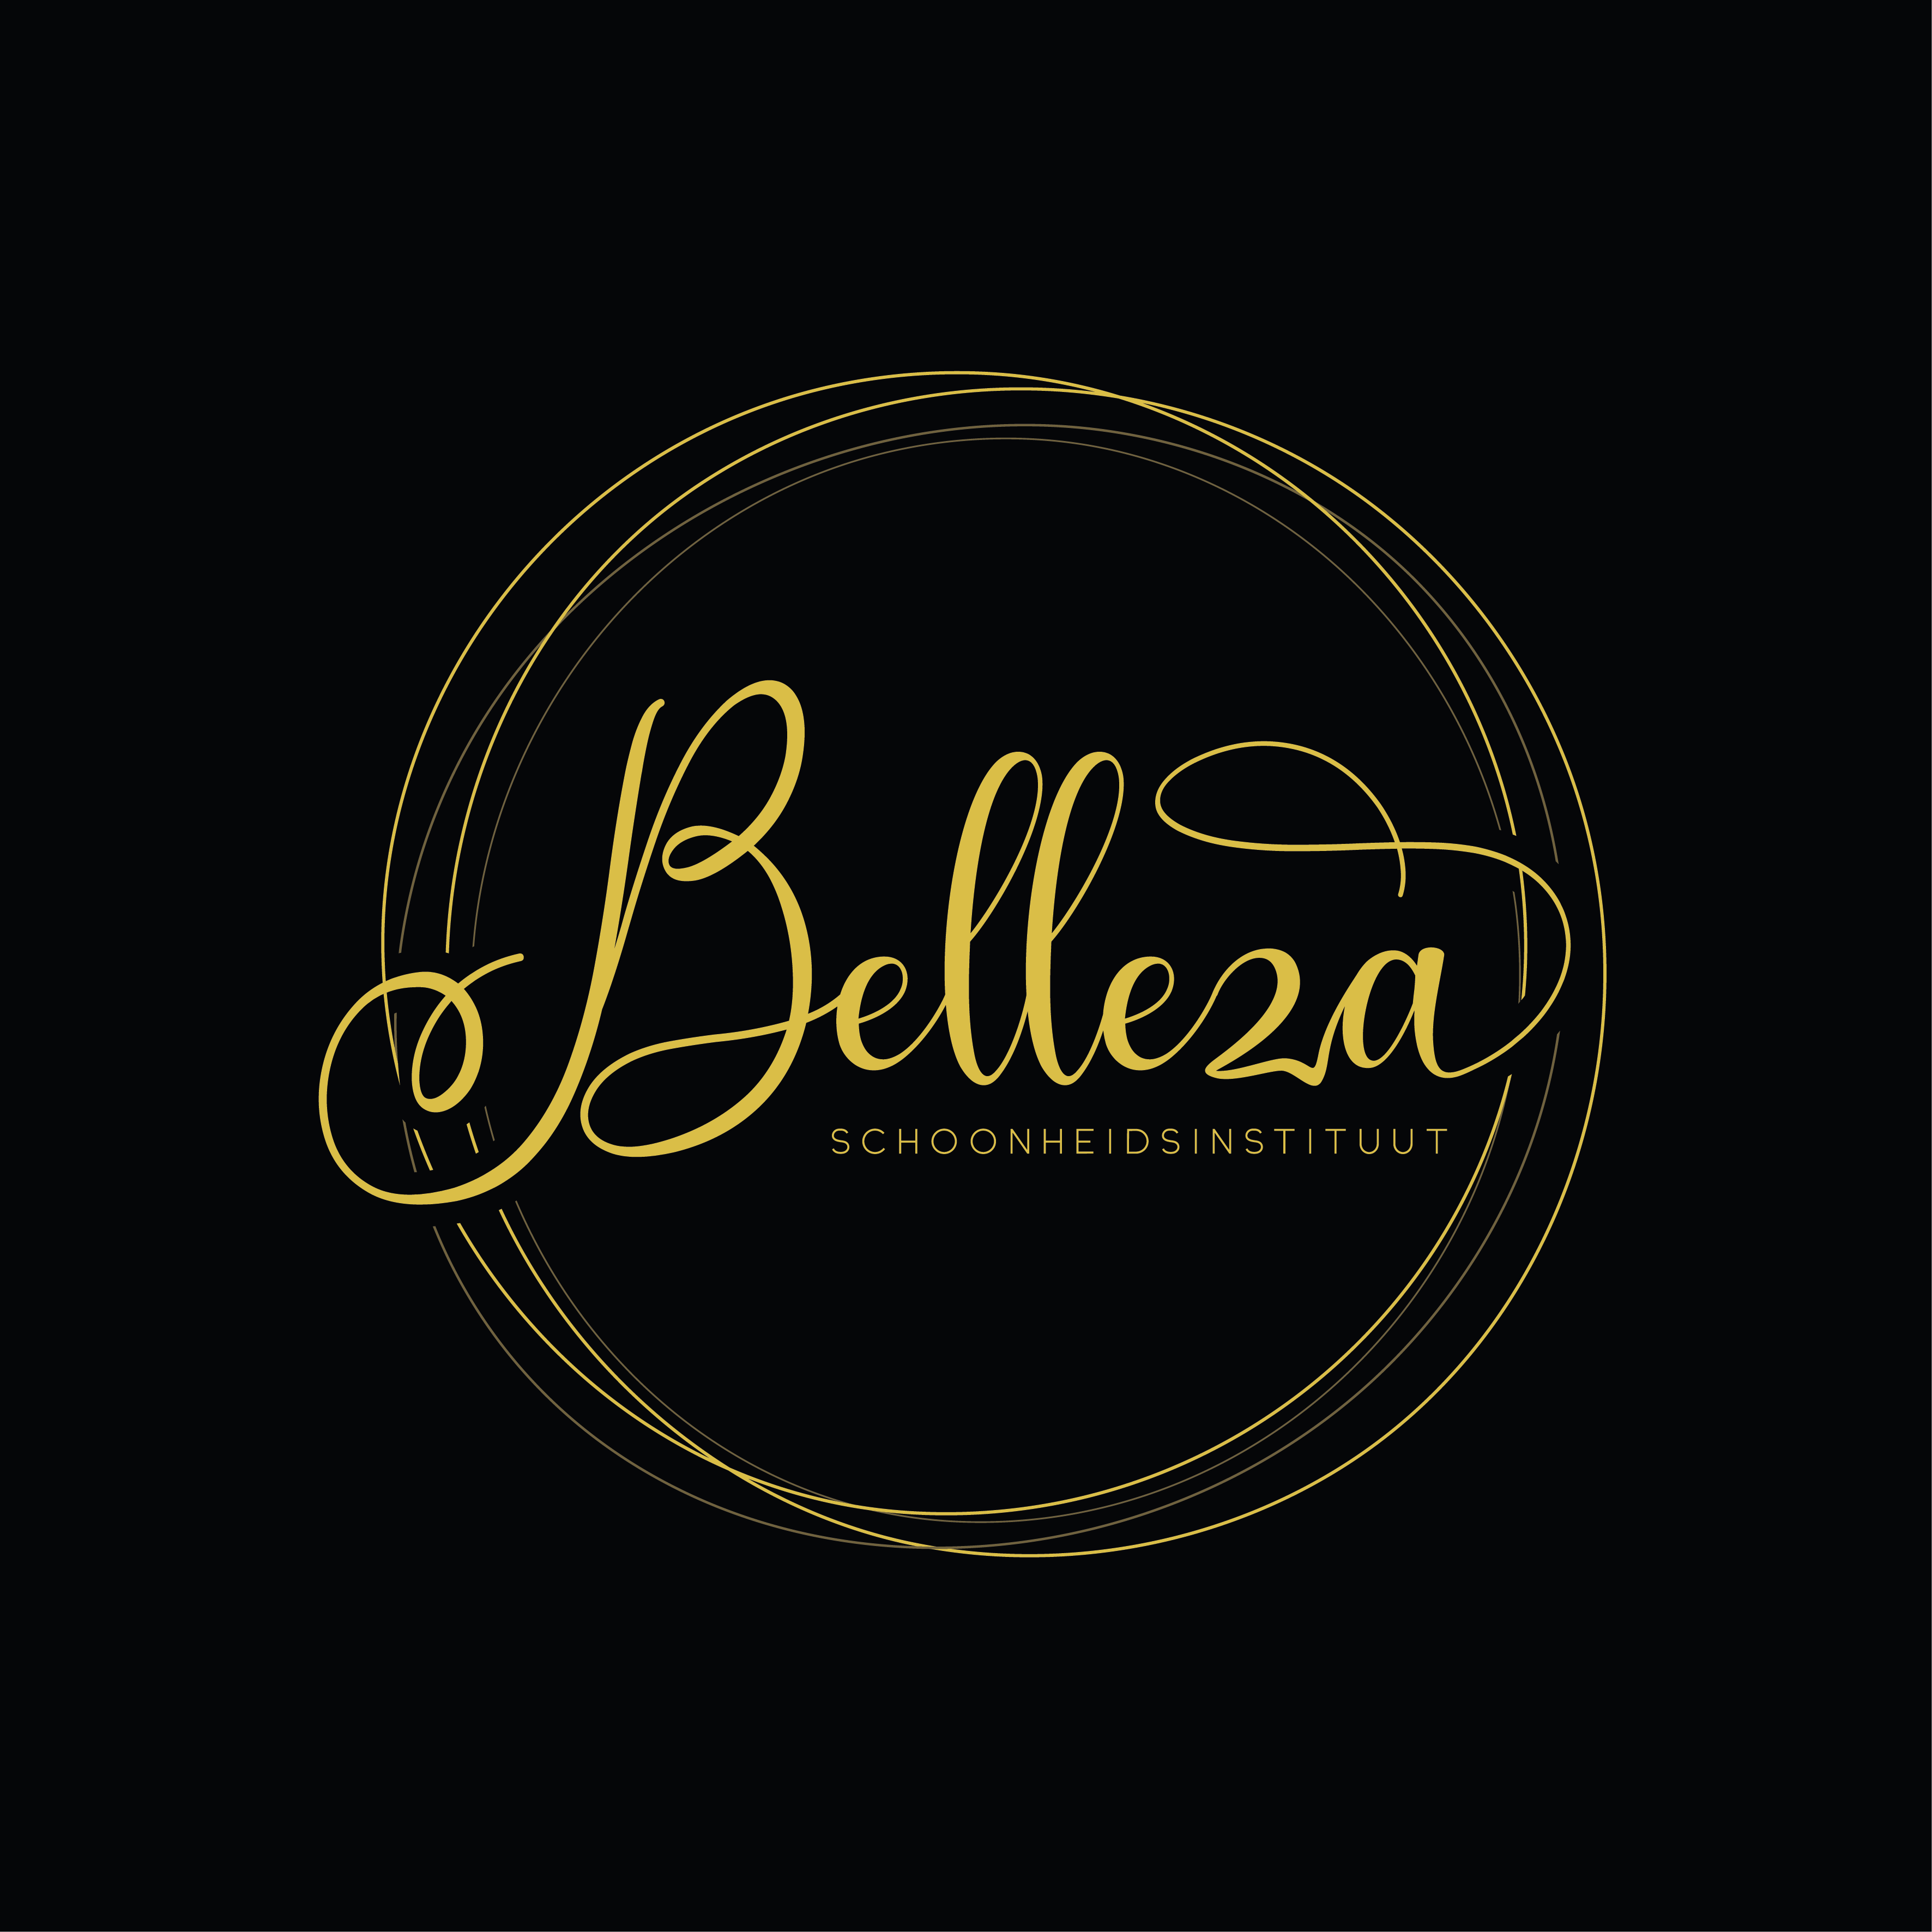 Schoonheidsinstituut Belleza